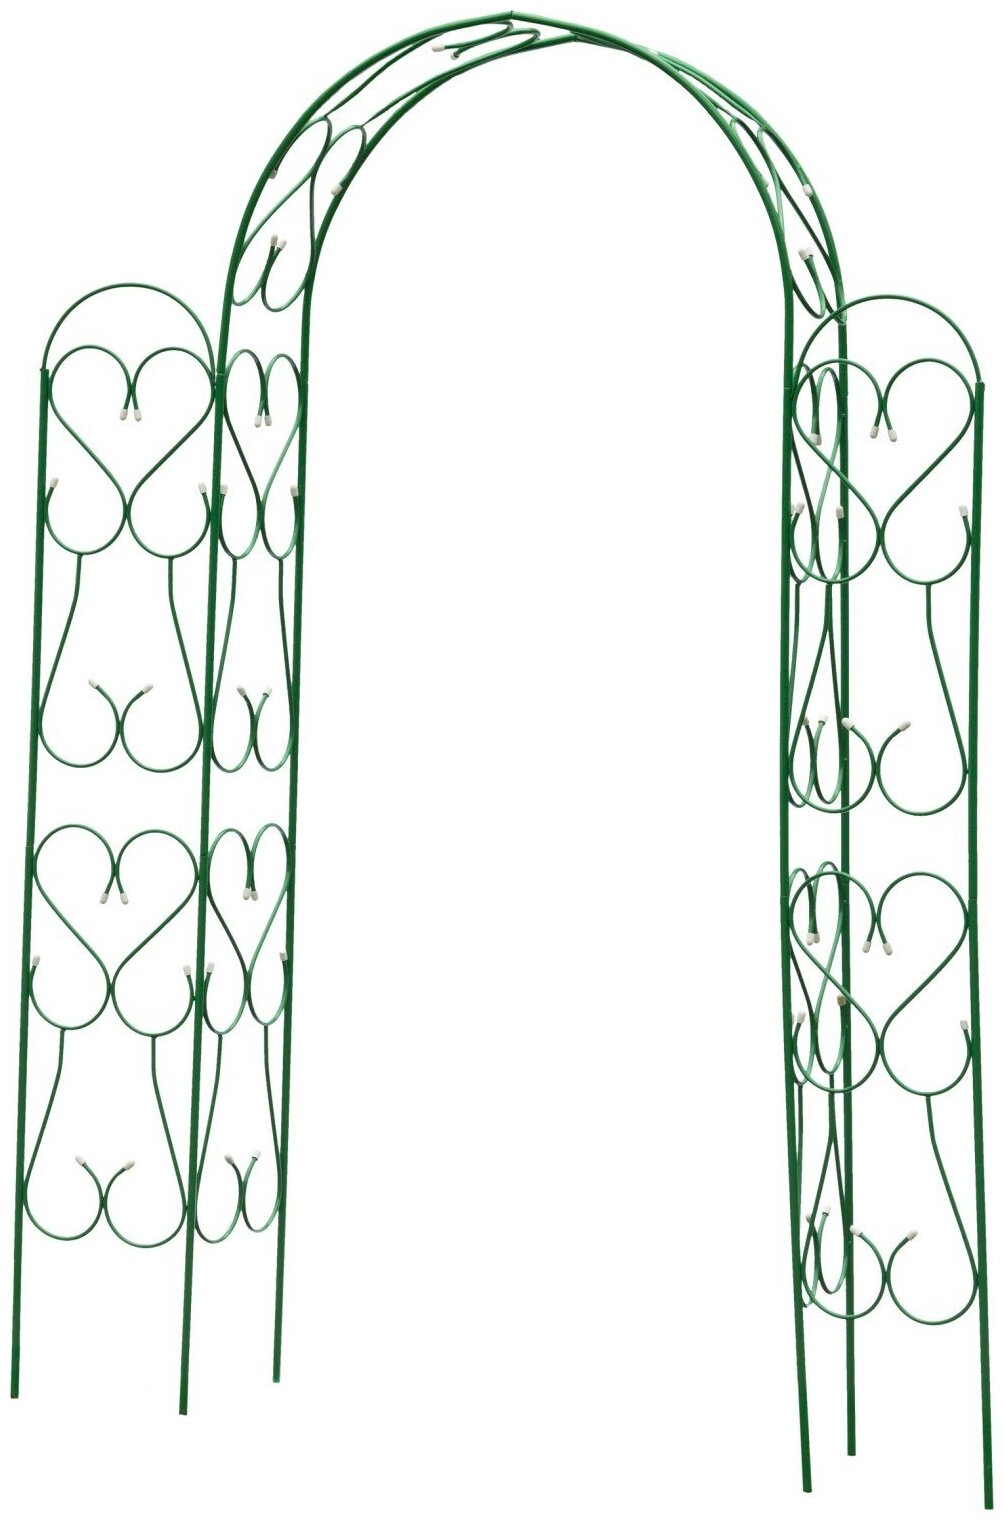 GRINDA ампир, 240 х 120 х 36 см, угловая, разборная, стальная, декоративная арка (422253)